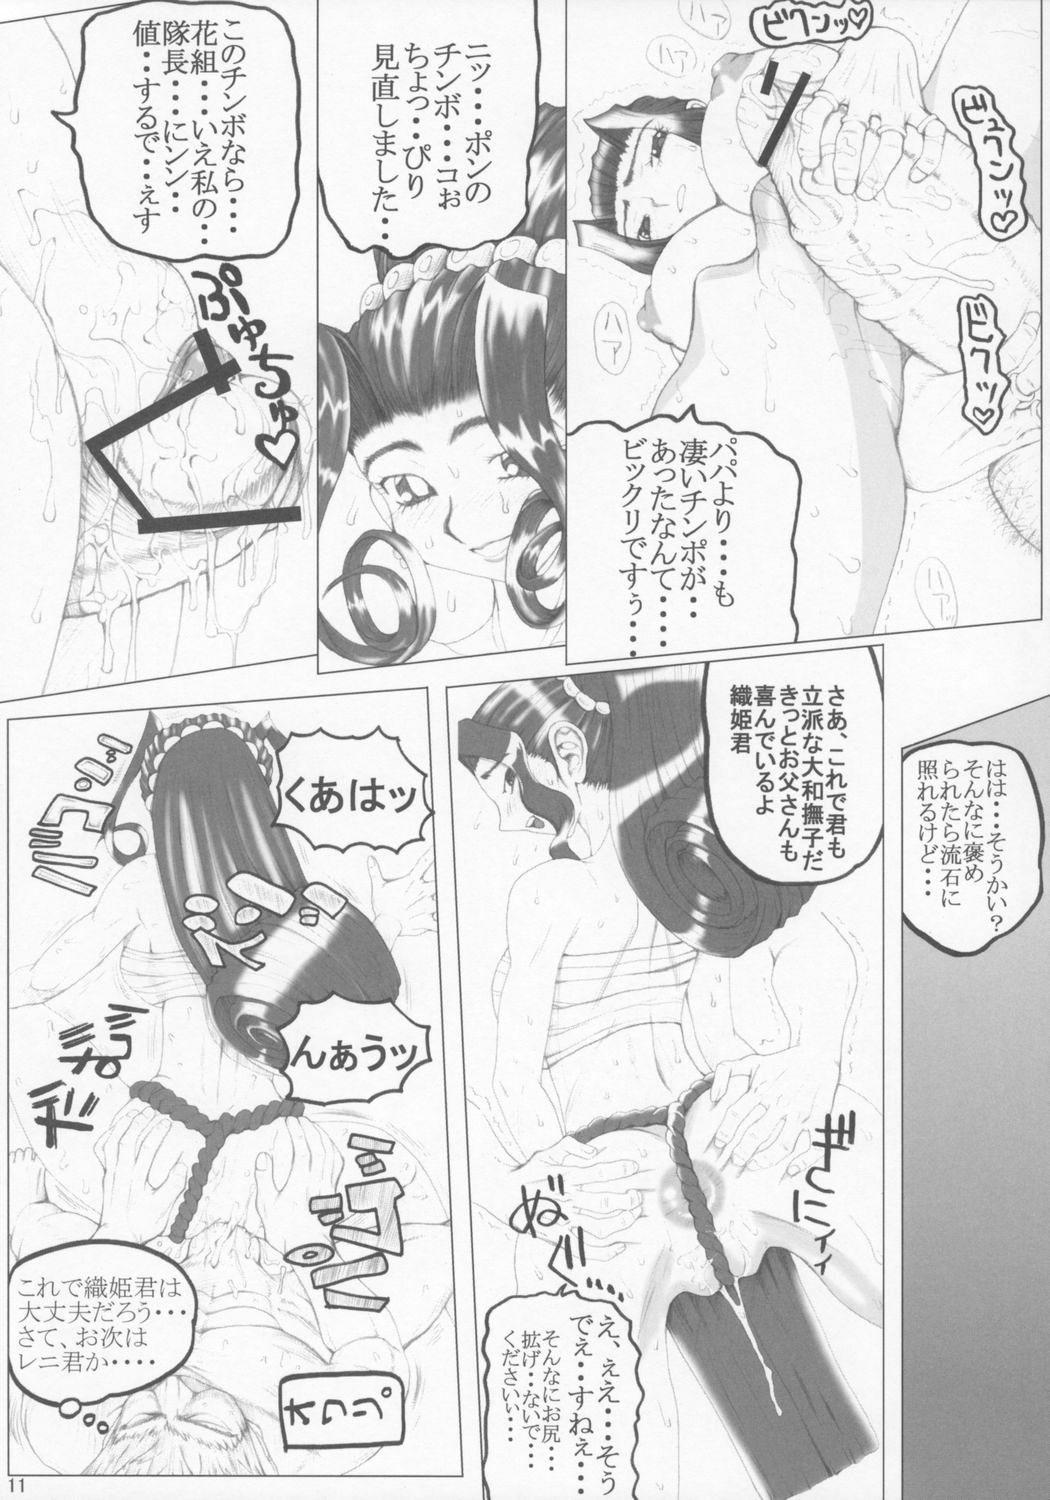 18 Porn Han - Sakura taisen Screaming - Page 10